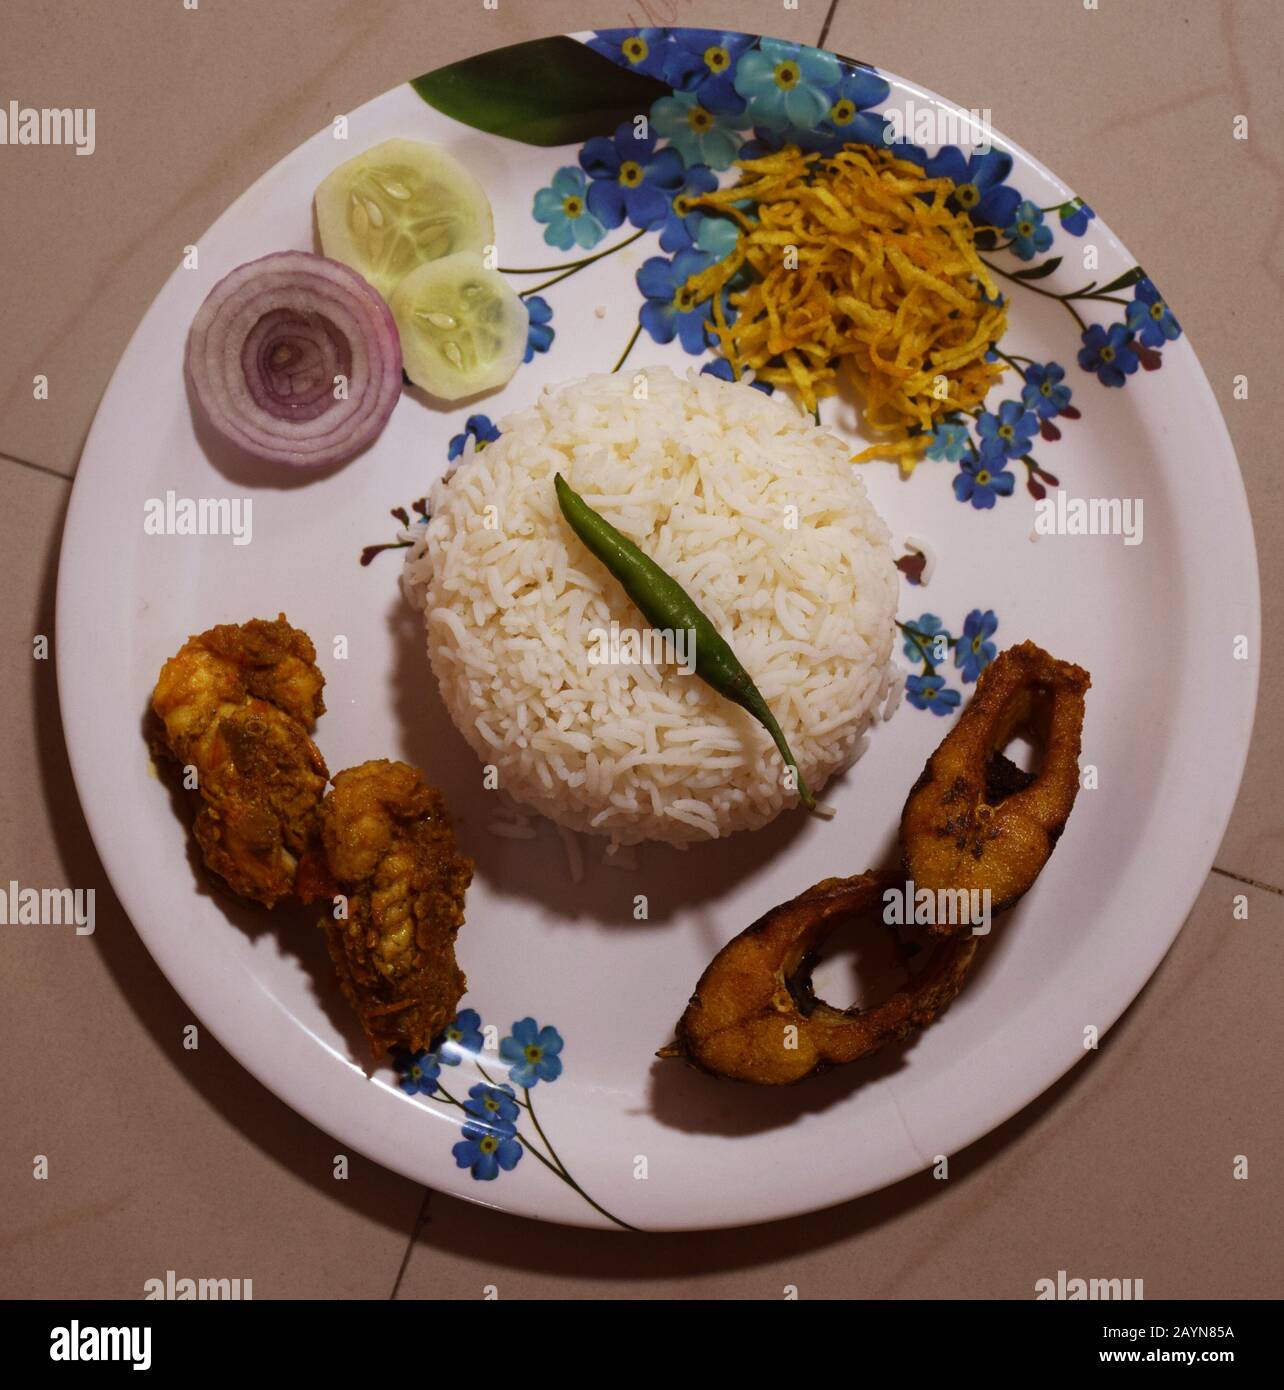 Bengalische Küche - köstliche hausgemachte bengalische Fisch Thali oder Gericht besteht aus Rohu Fisch braten zusammen mit Garnelen-Malai Curry, Reis, knusprige Kartoffelbraten und Salat Stockfoto